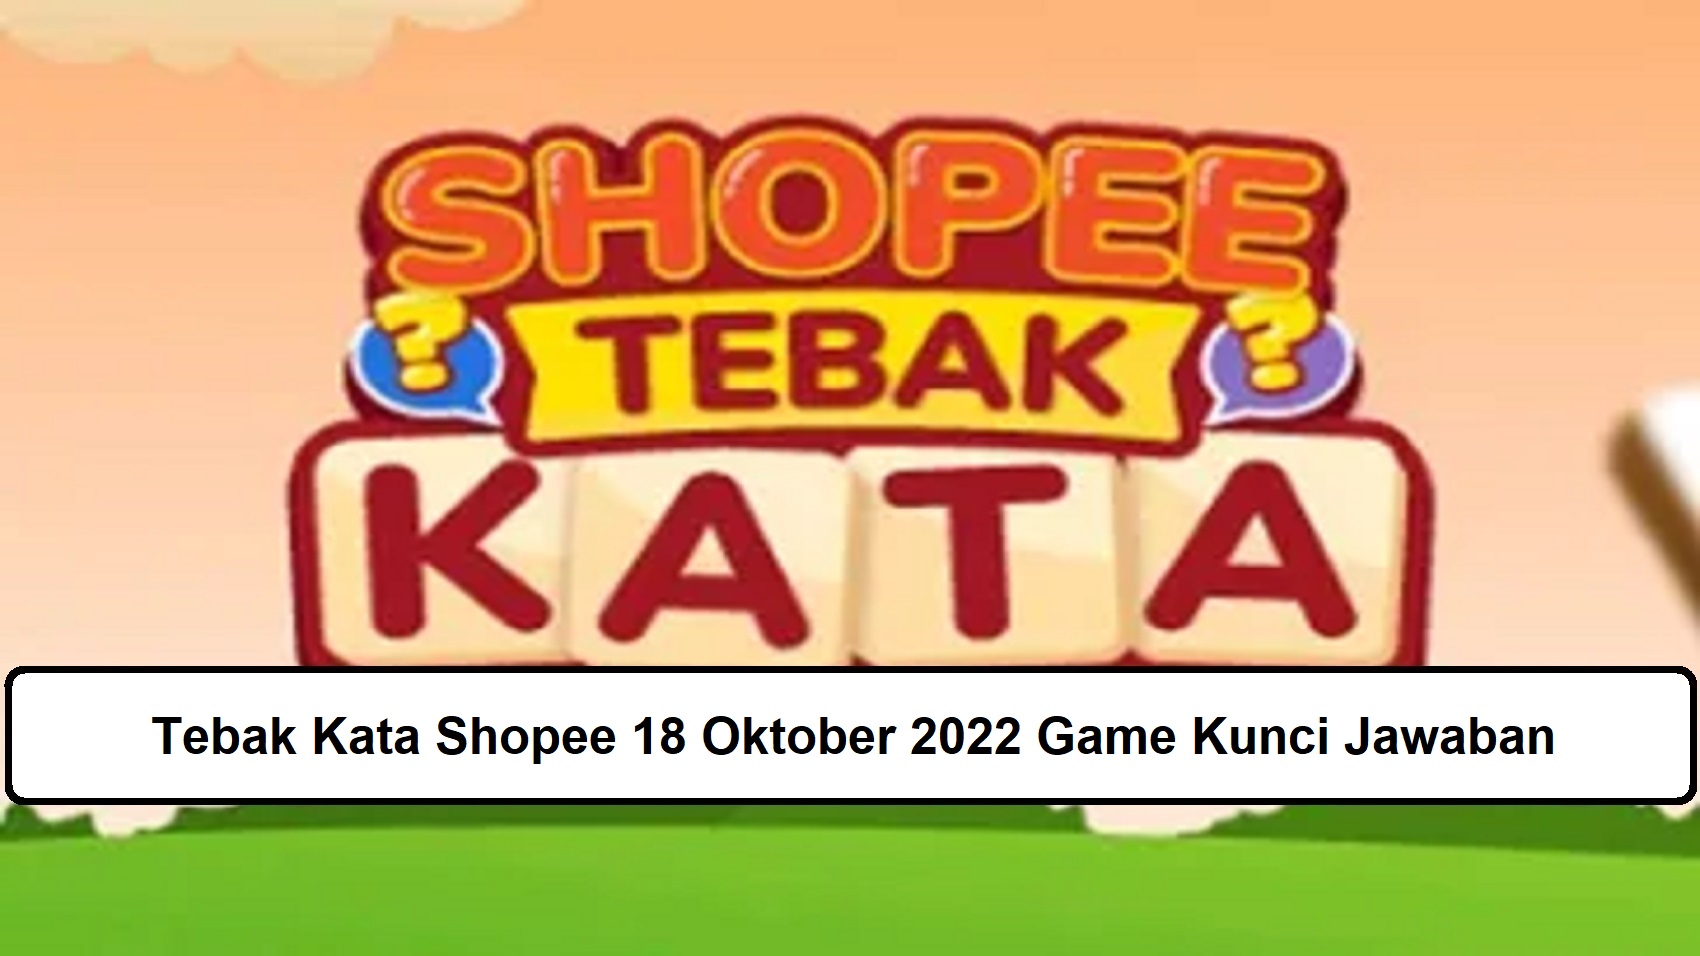 Tebak Kata Shopee 18 Oktober 2022 Game Kunci Jawaban